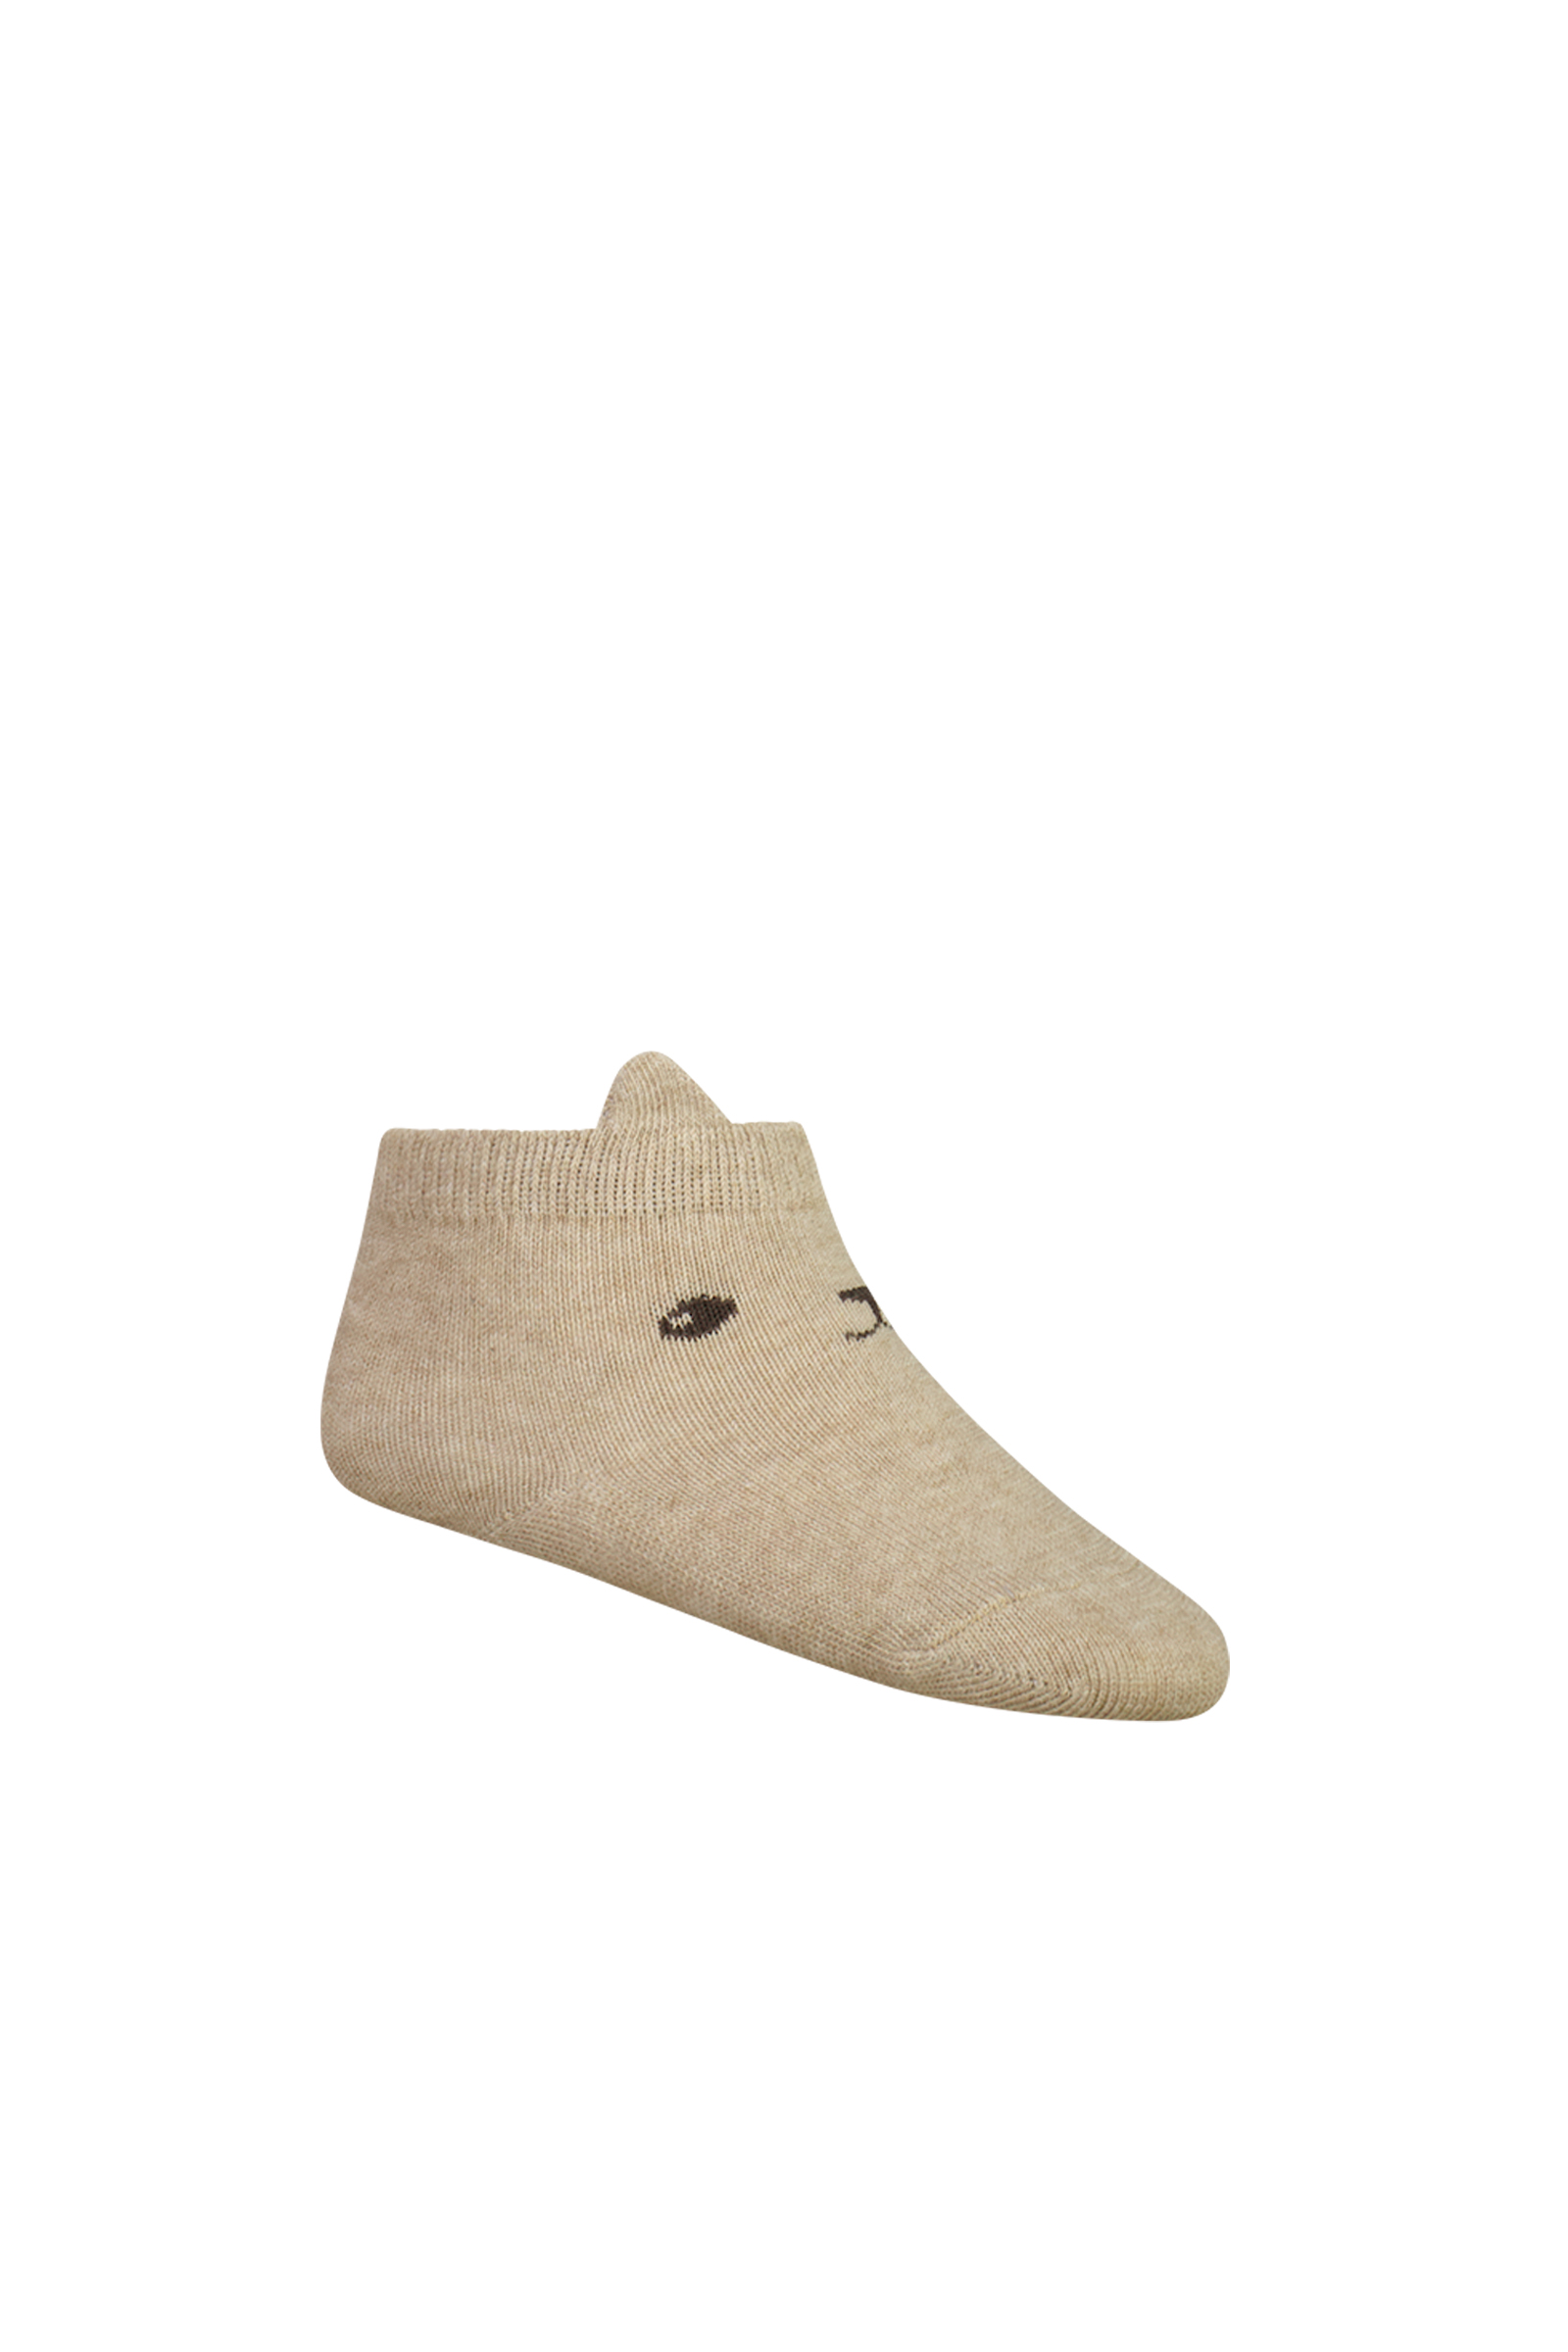 Jamie Kay George Bear Ankle Sock in Lait Marle